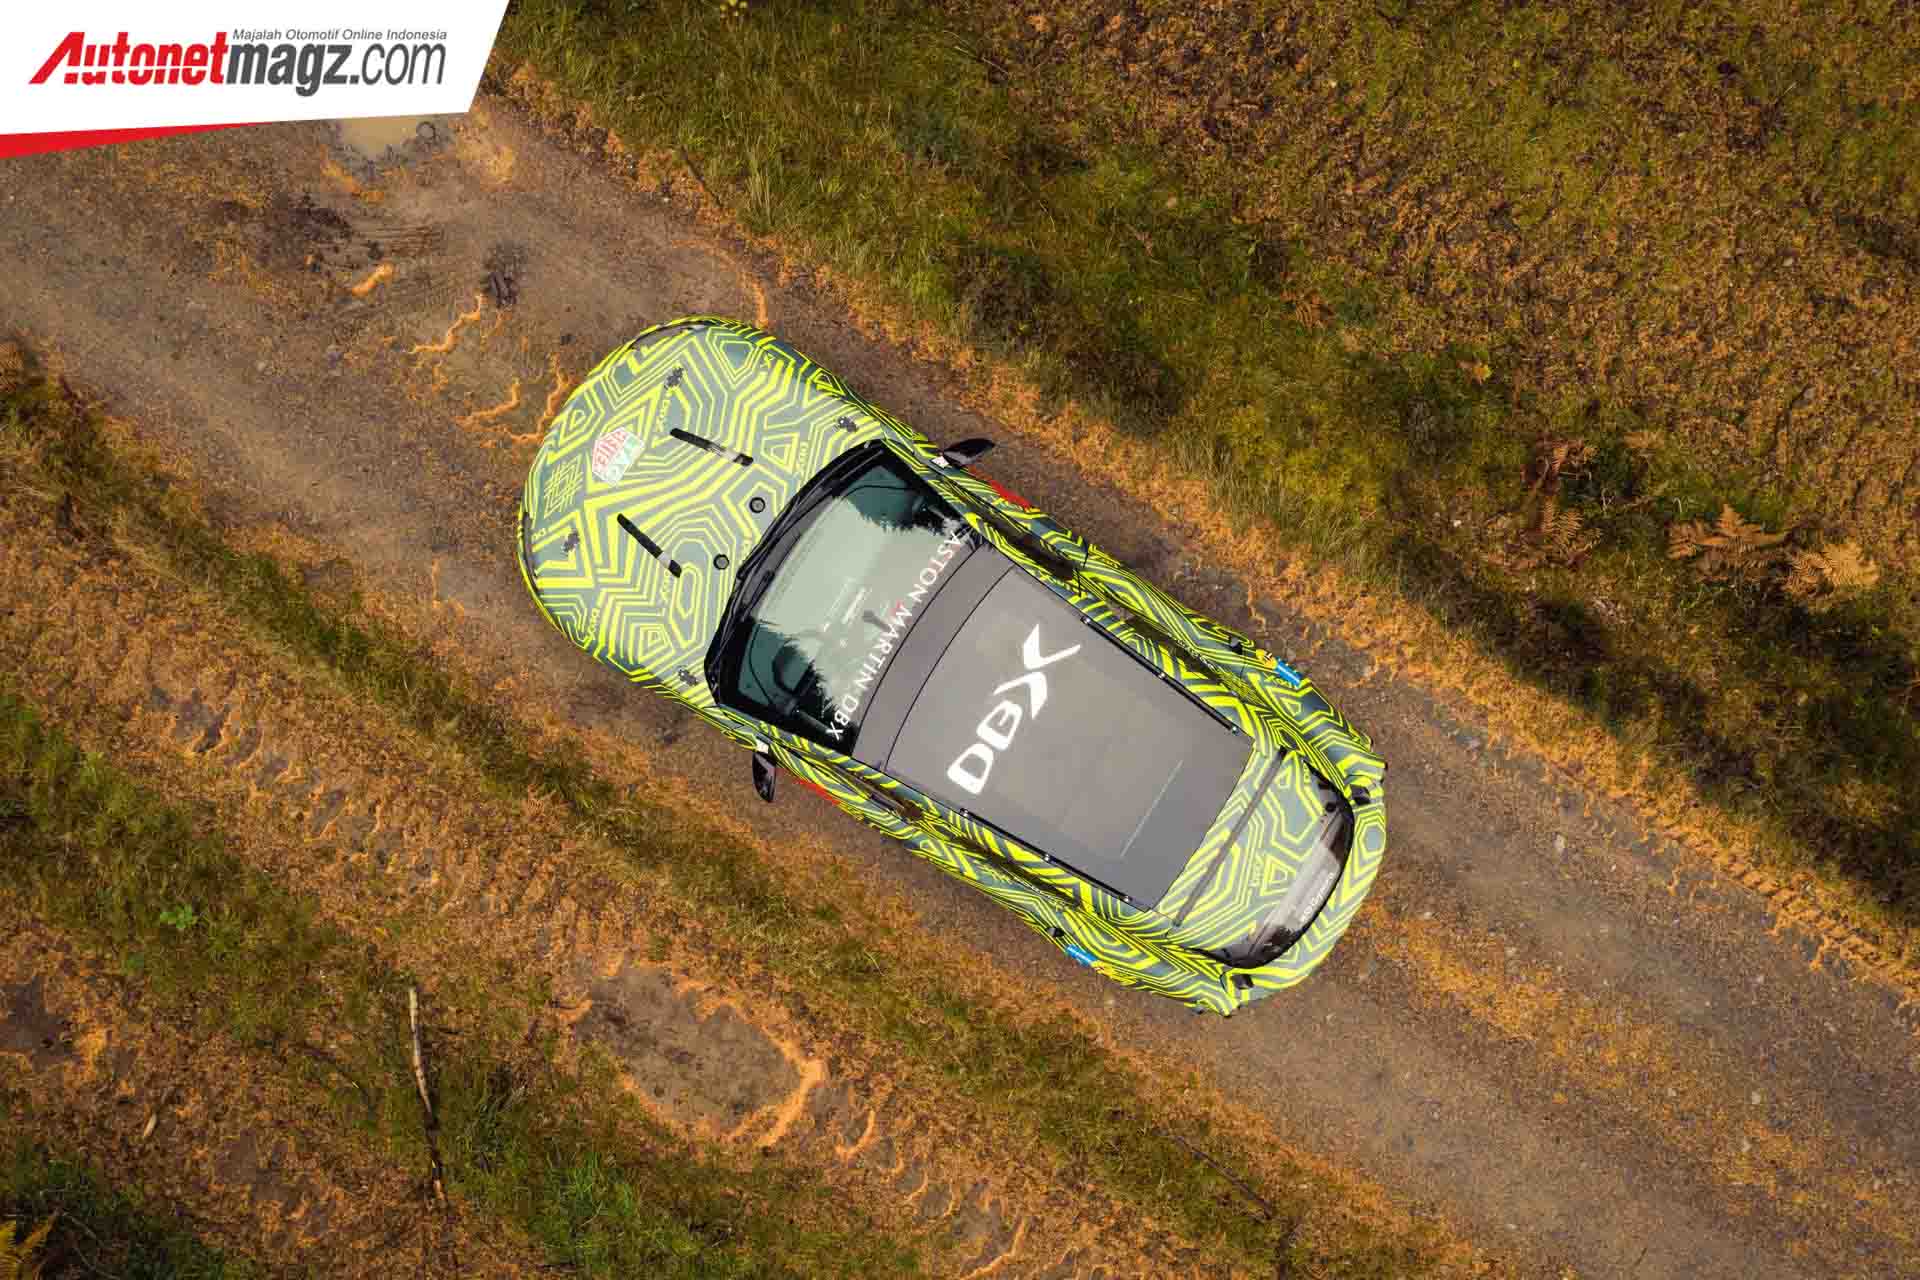 Aston Martin, Aston Martin DBX SUV: SUV Perdana Aston Martin DBX Sedang Diuji Coba